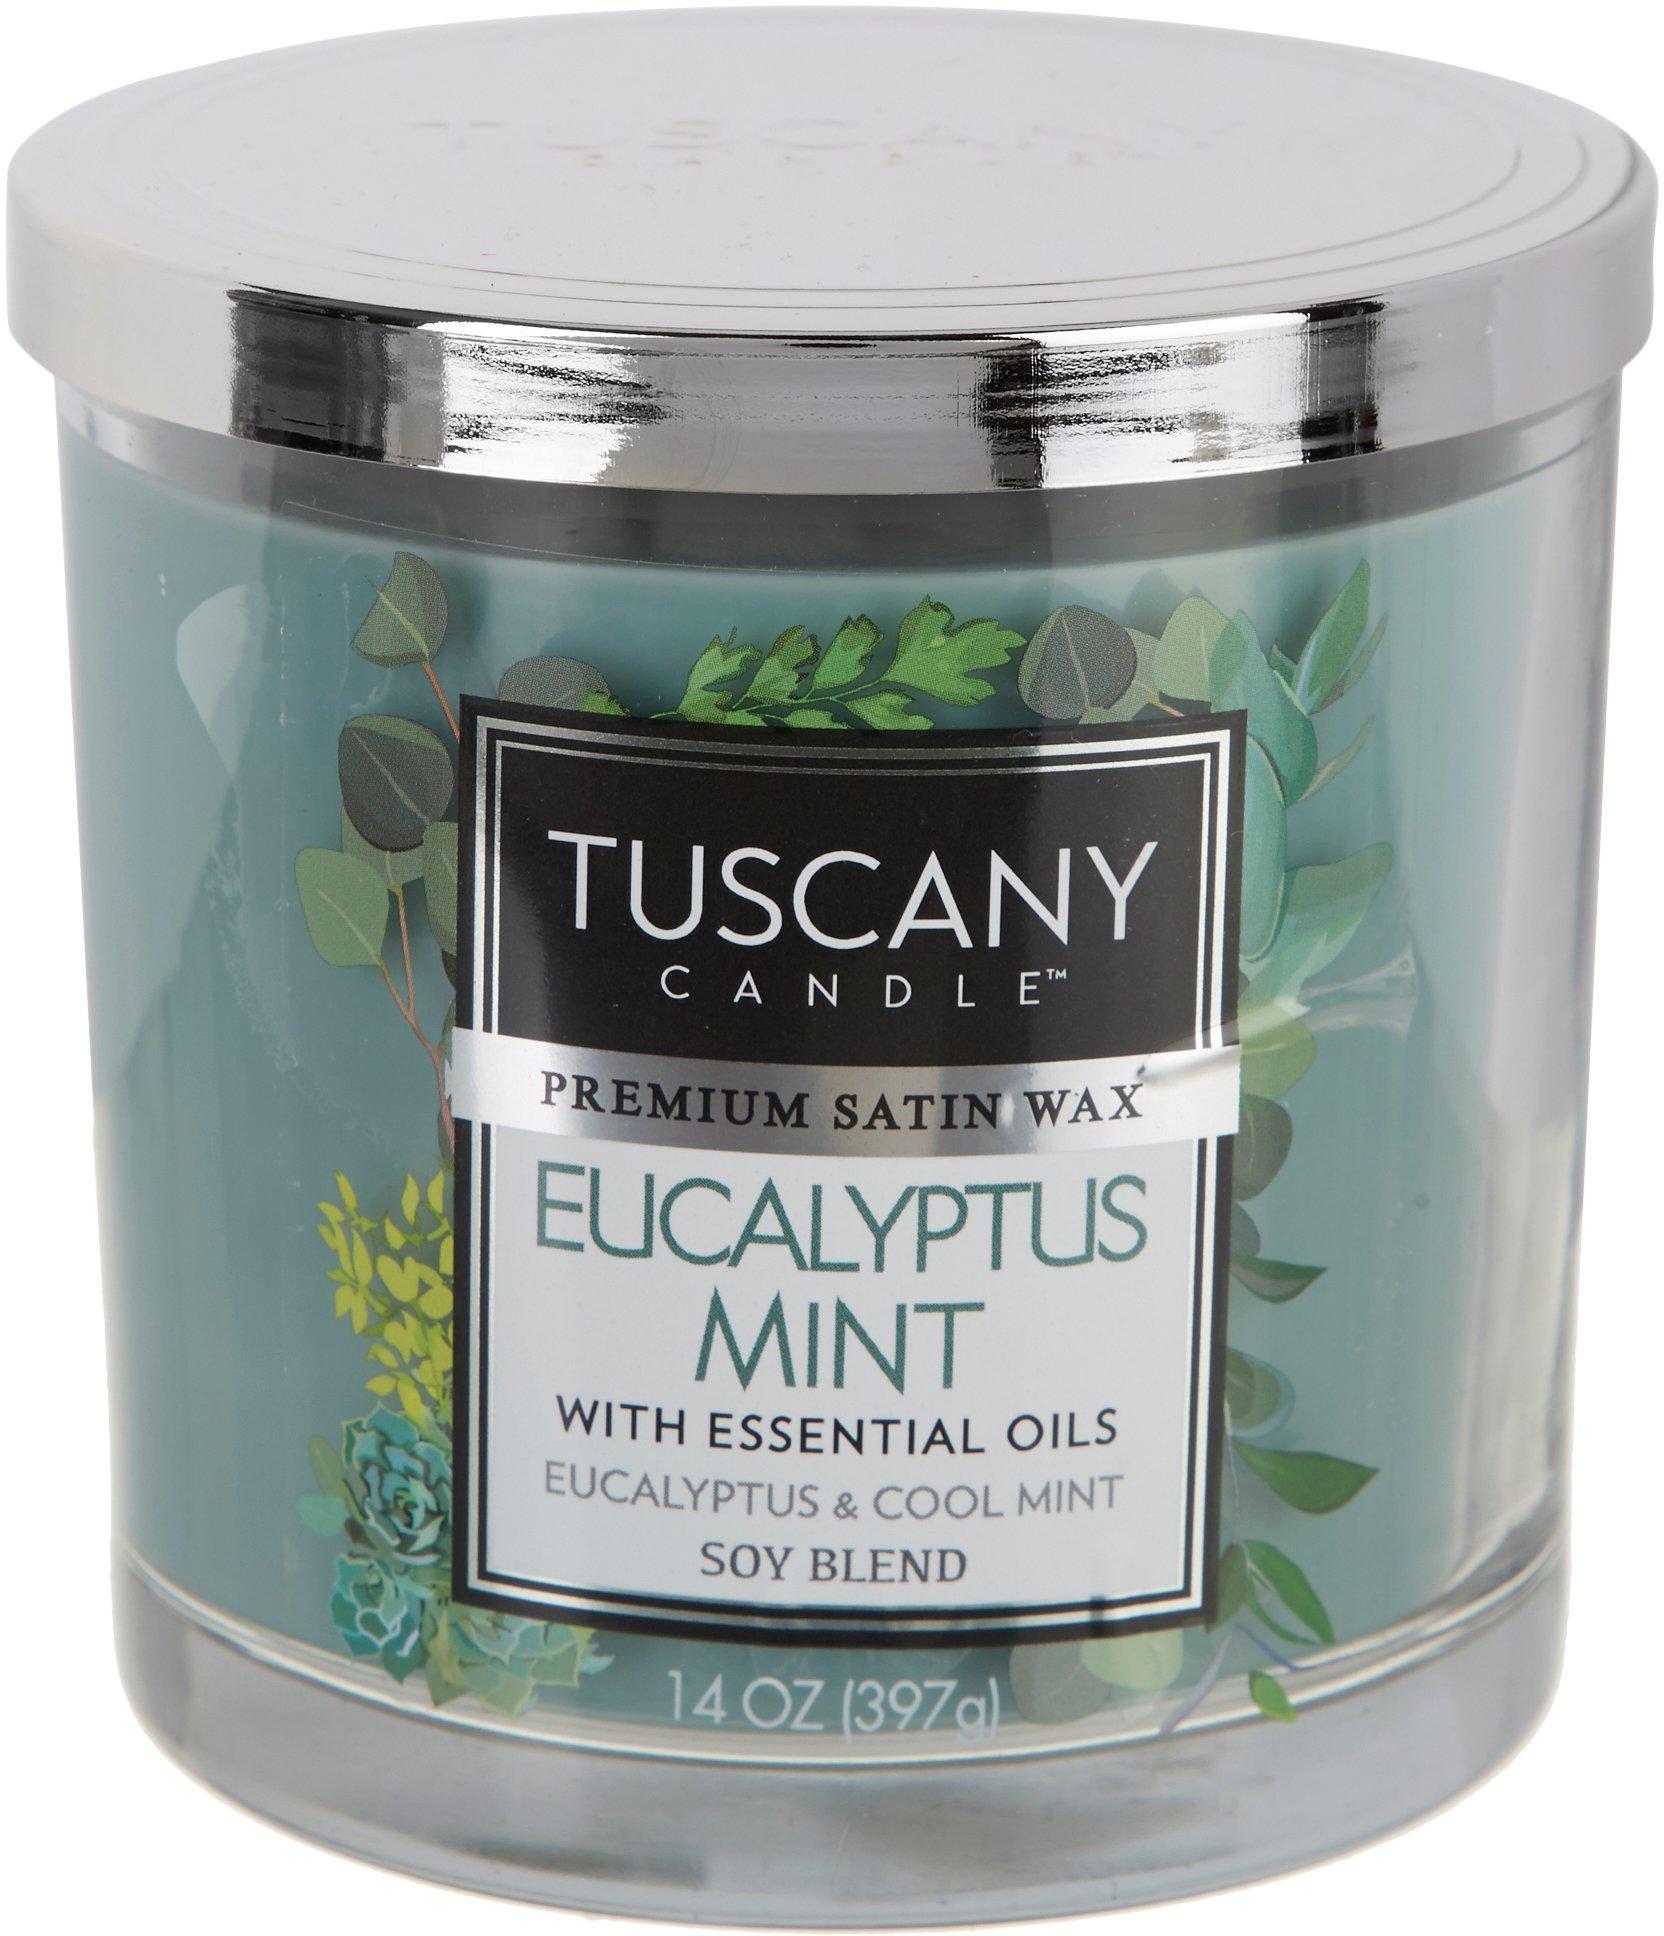 14 oz. Eucalyptus Mint Soy Blend Jar Candle